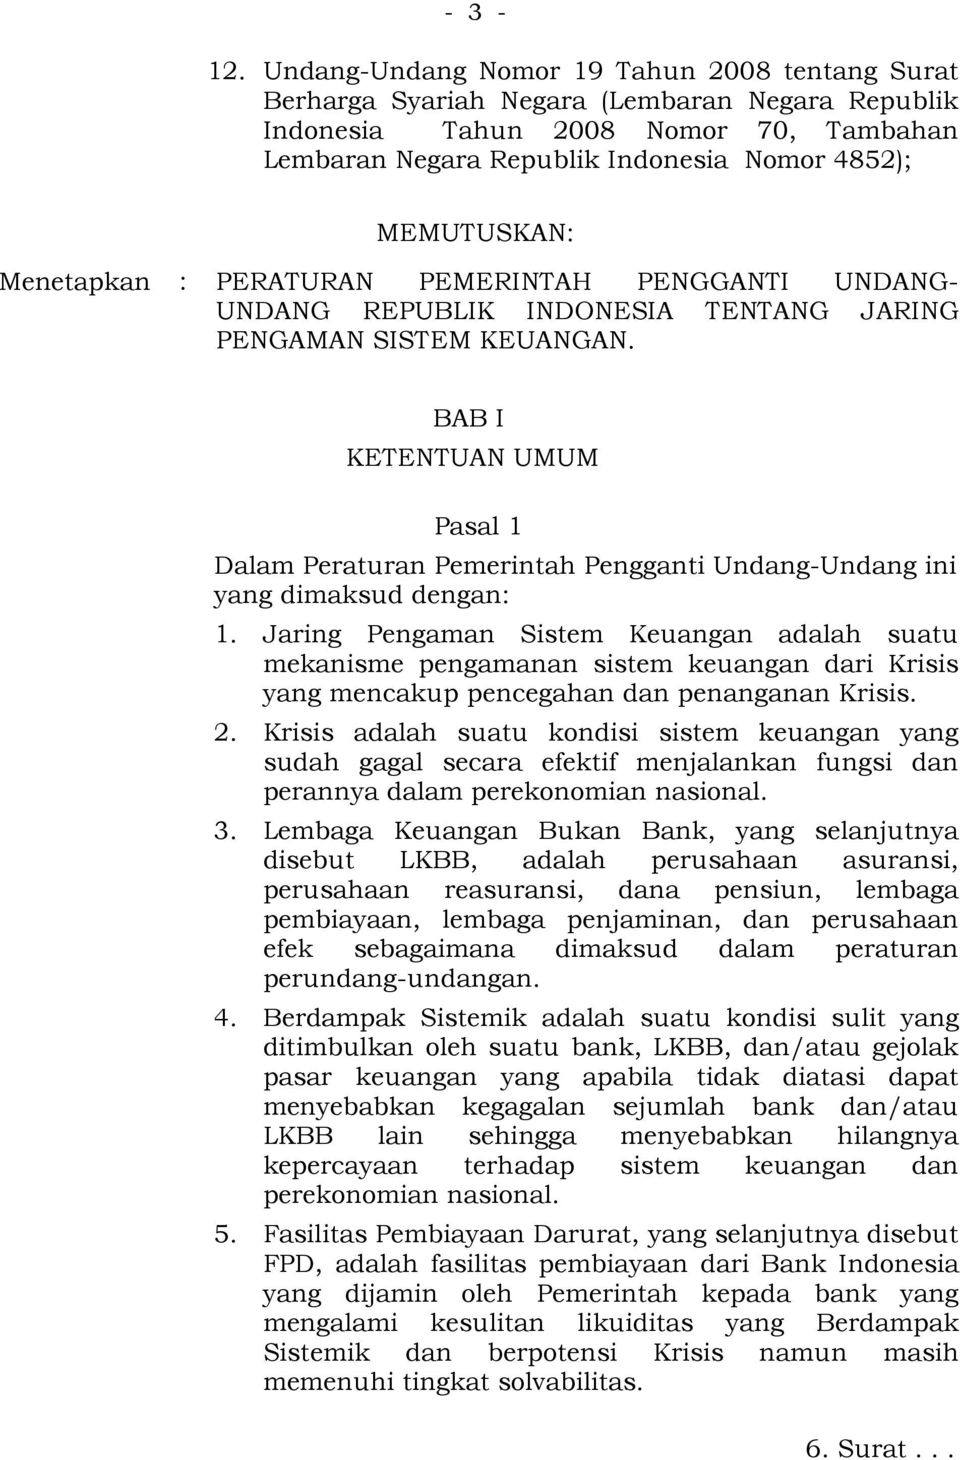 Menetapkan : PERATURAN PEMERINTAH PENGGANTI UNDANG- UNDANG REPUBLIK INDONESIA TENTANG JARING PENGAMAN SISTEM KEUANGAN.